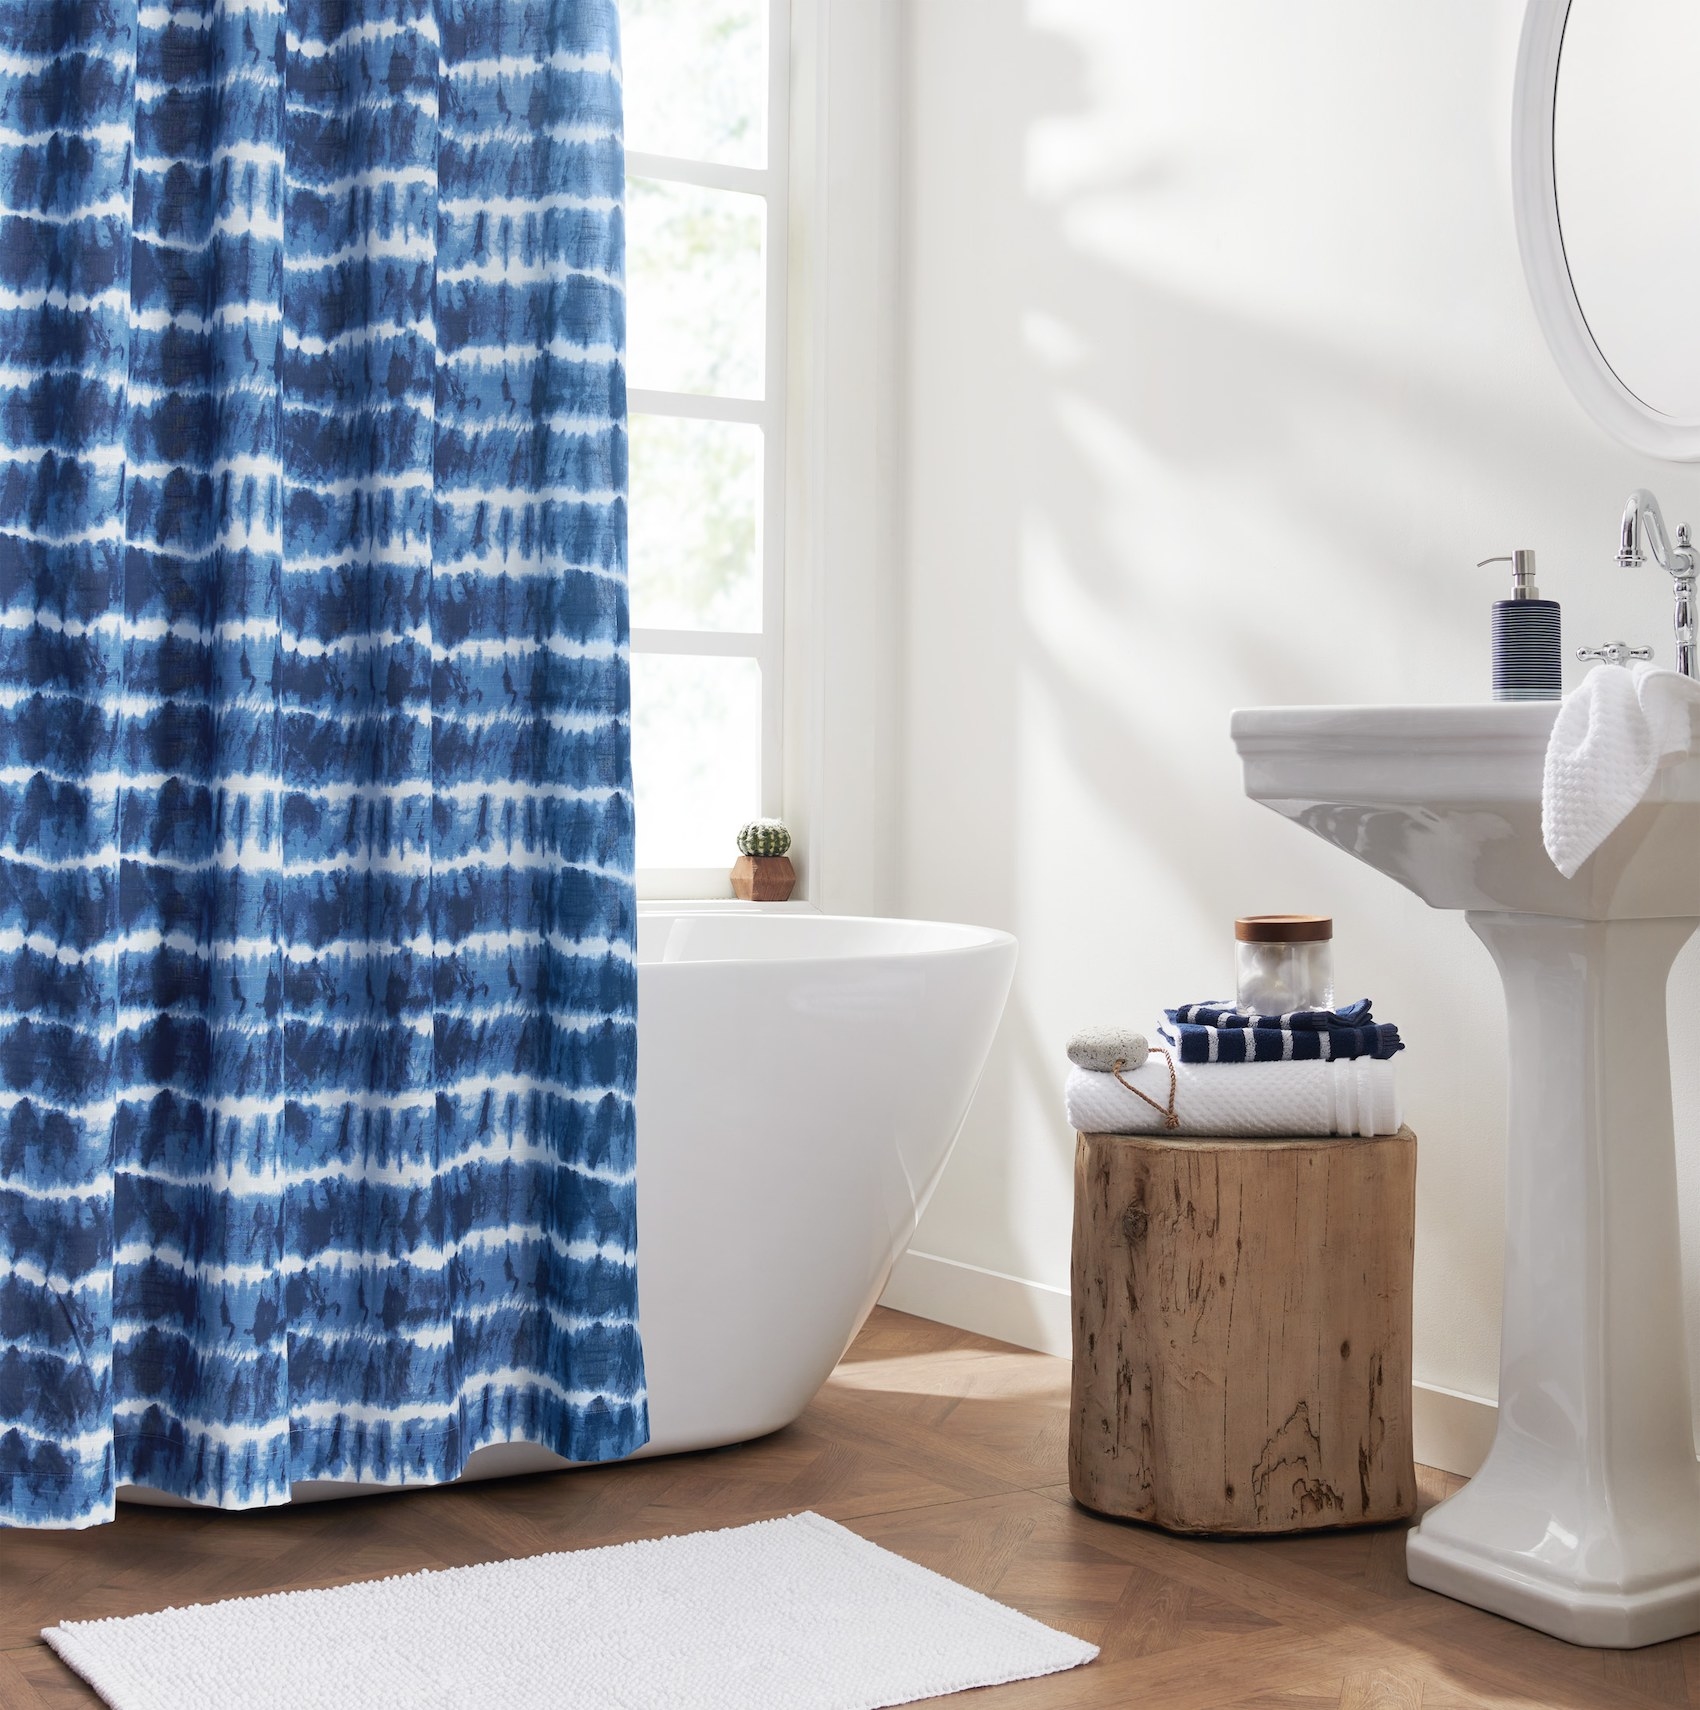 Việc thay rèm phòng tắm là cách nhanh chóng để cập nhật hoa văn, họa tiết hay màu sắc mà bạn ưa thích với giá phải chăng.